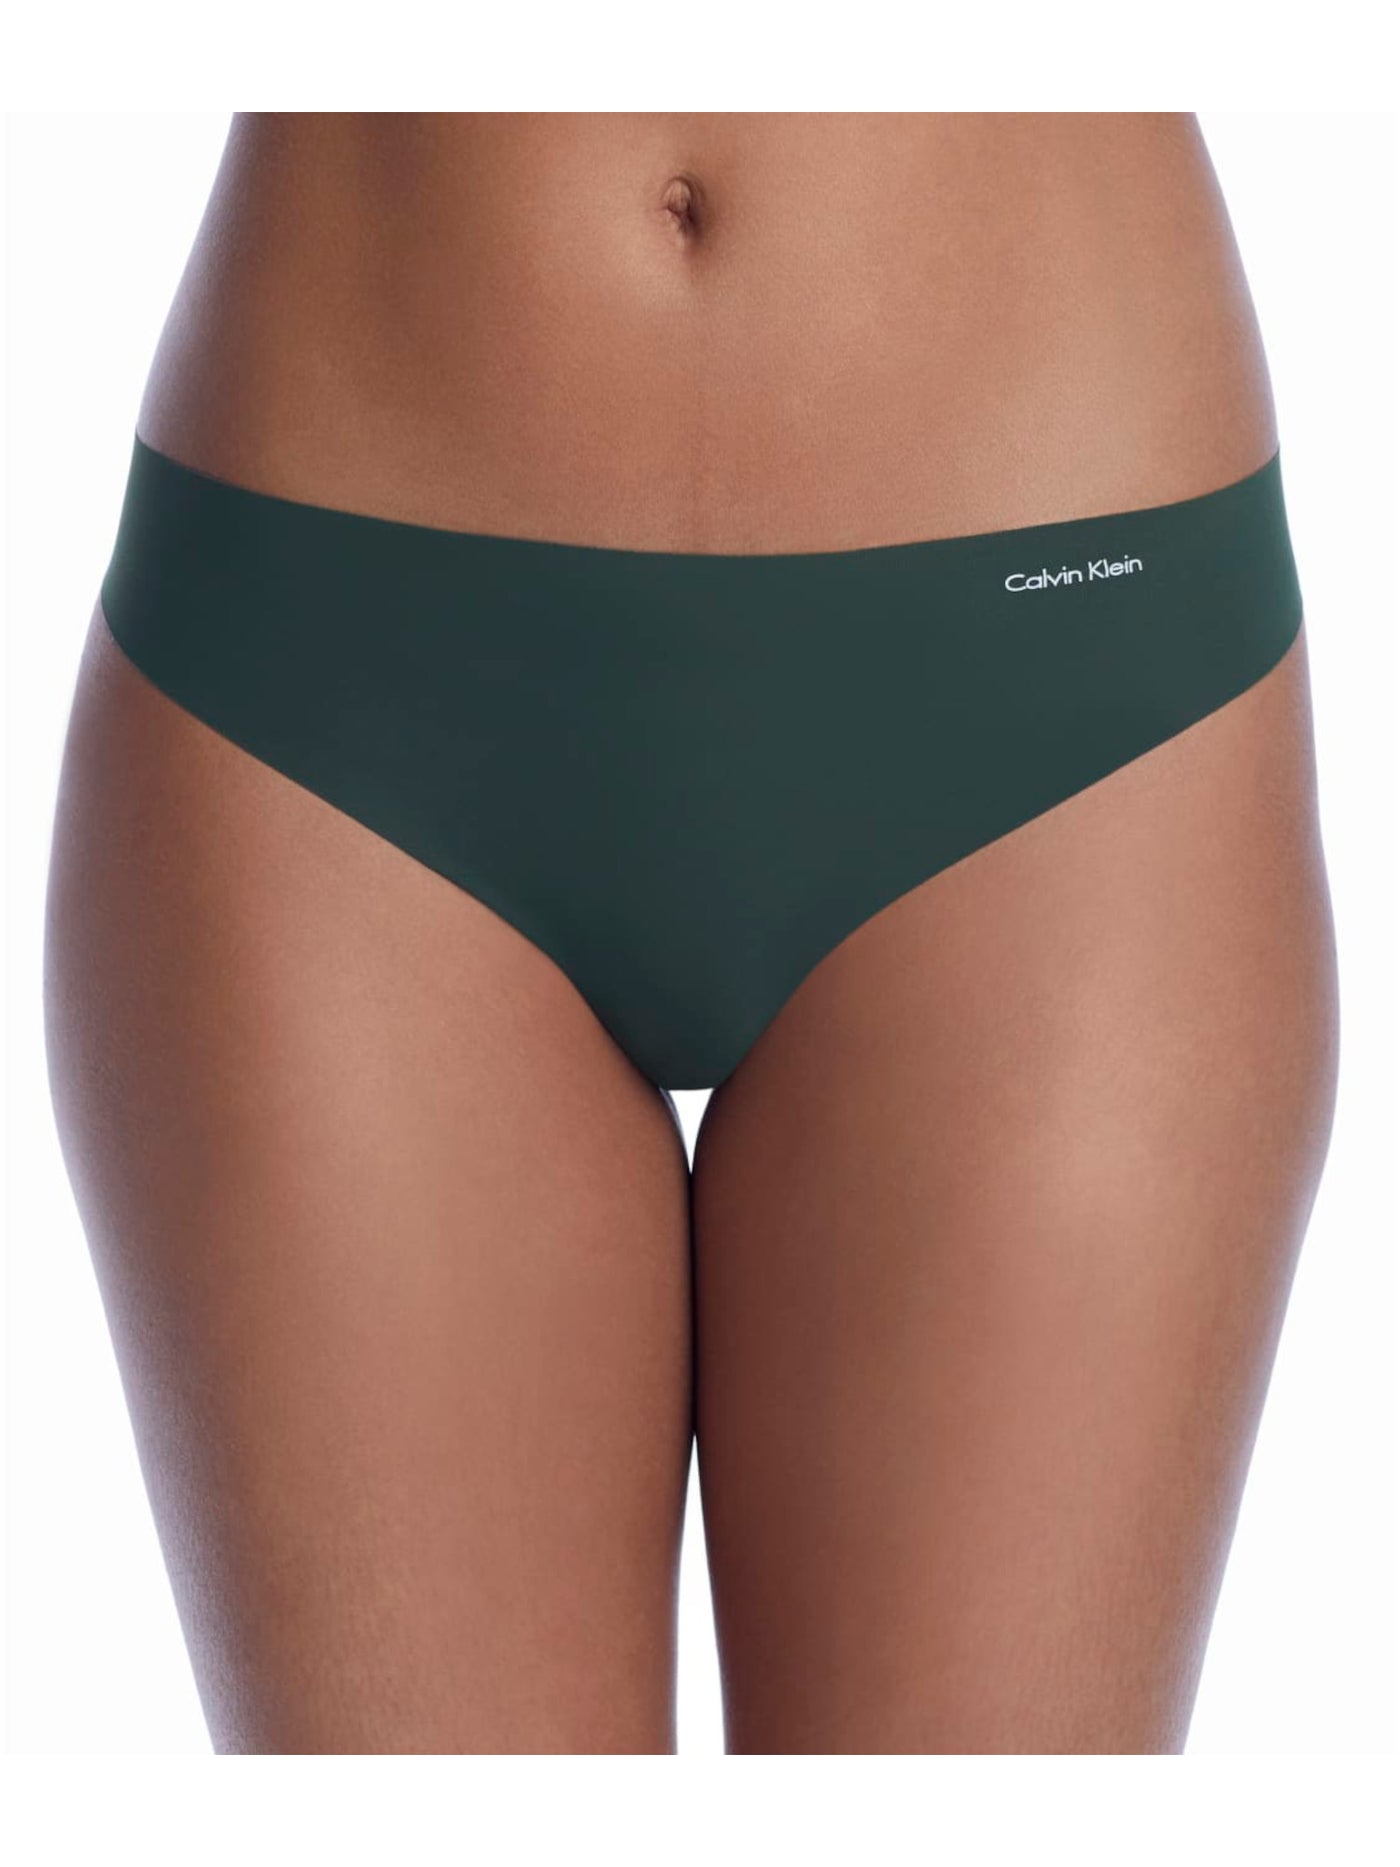 CALVIN KLEIN Intimates Green Laser-Cut Edges Thong Underwear L